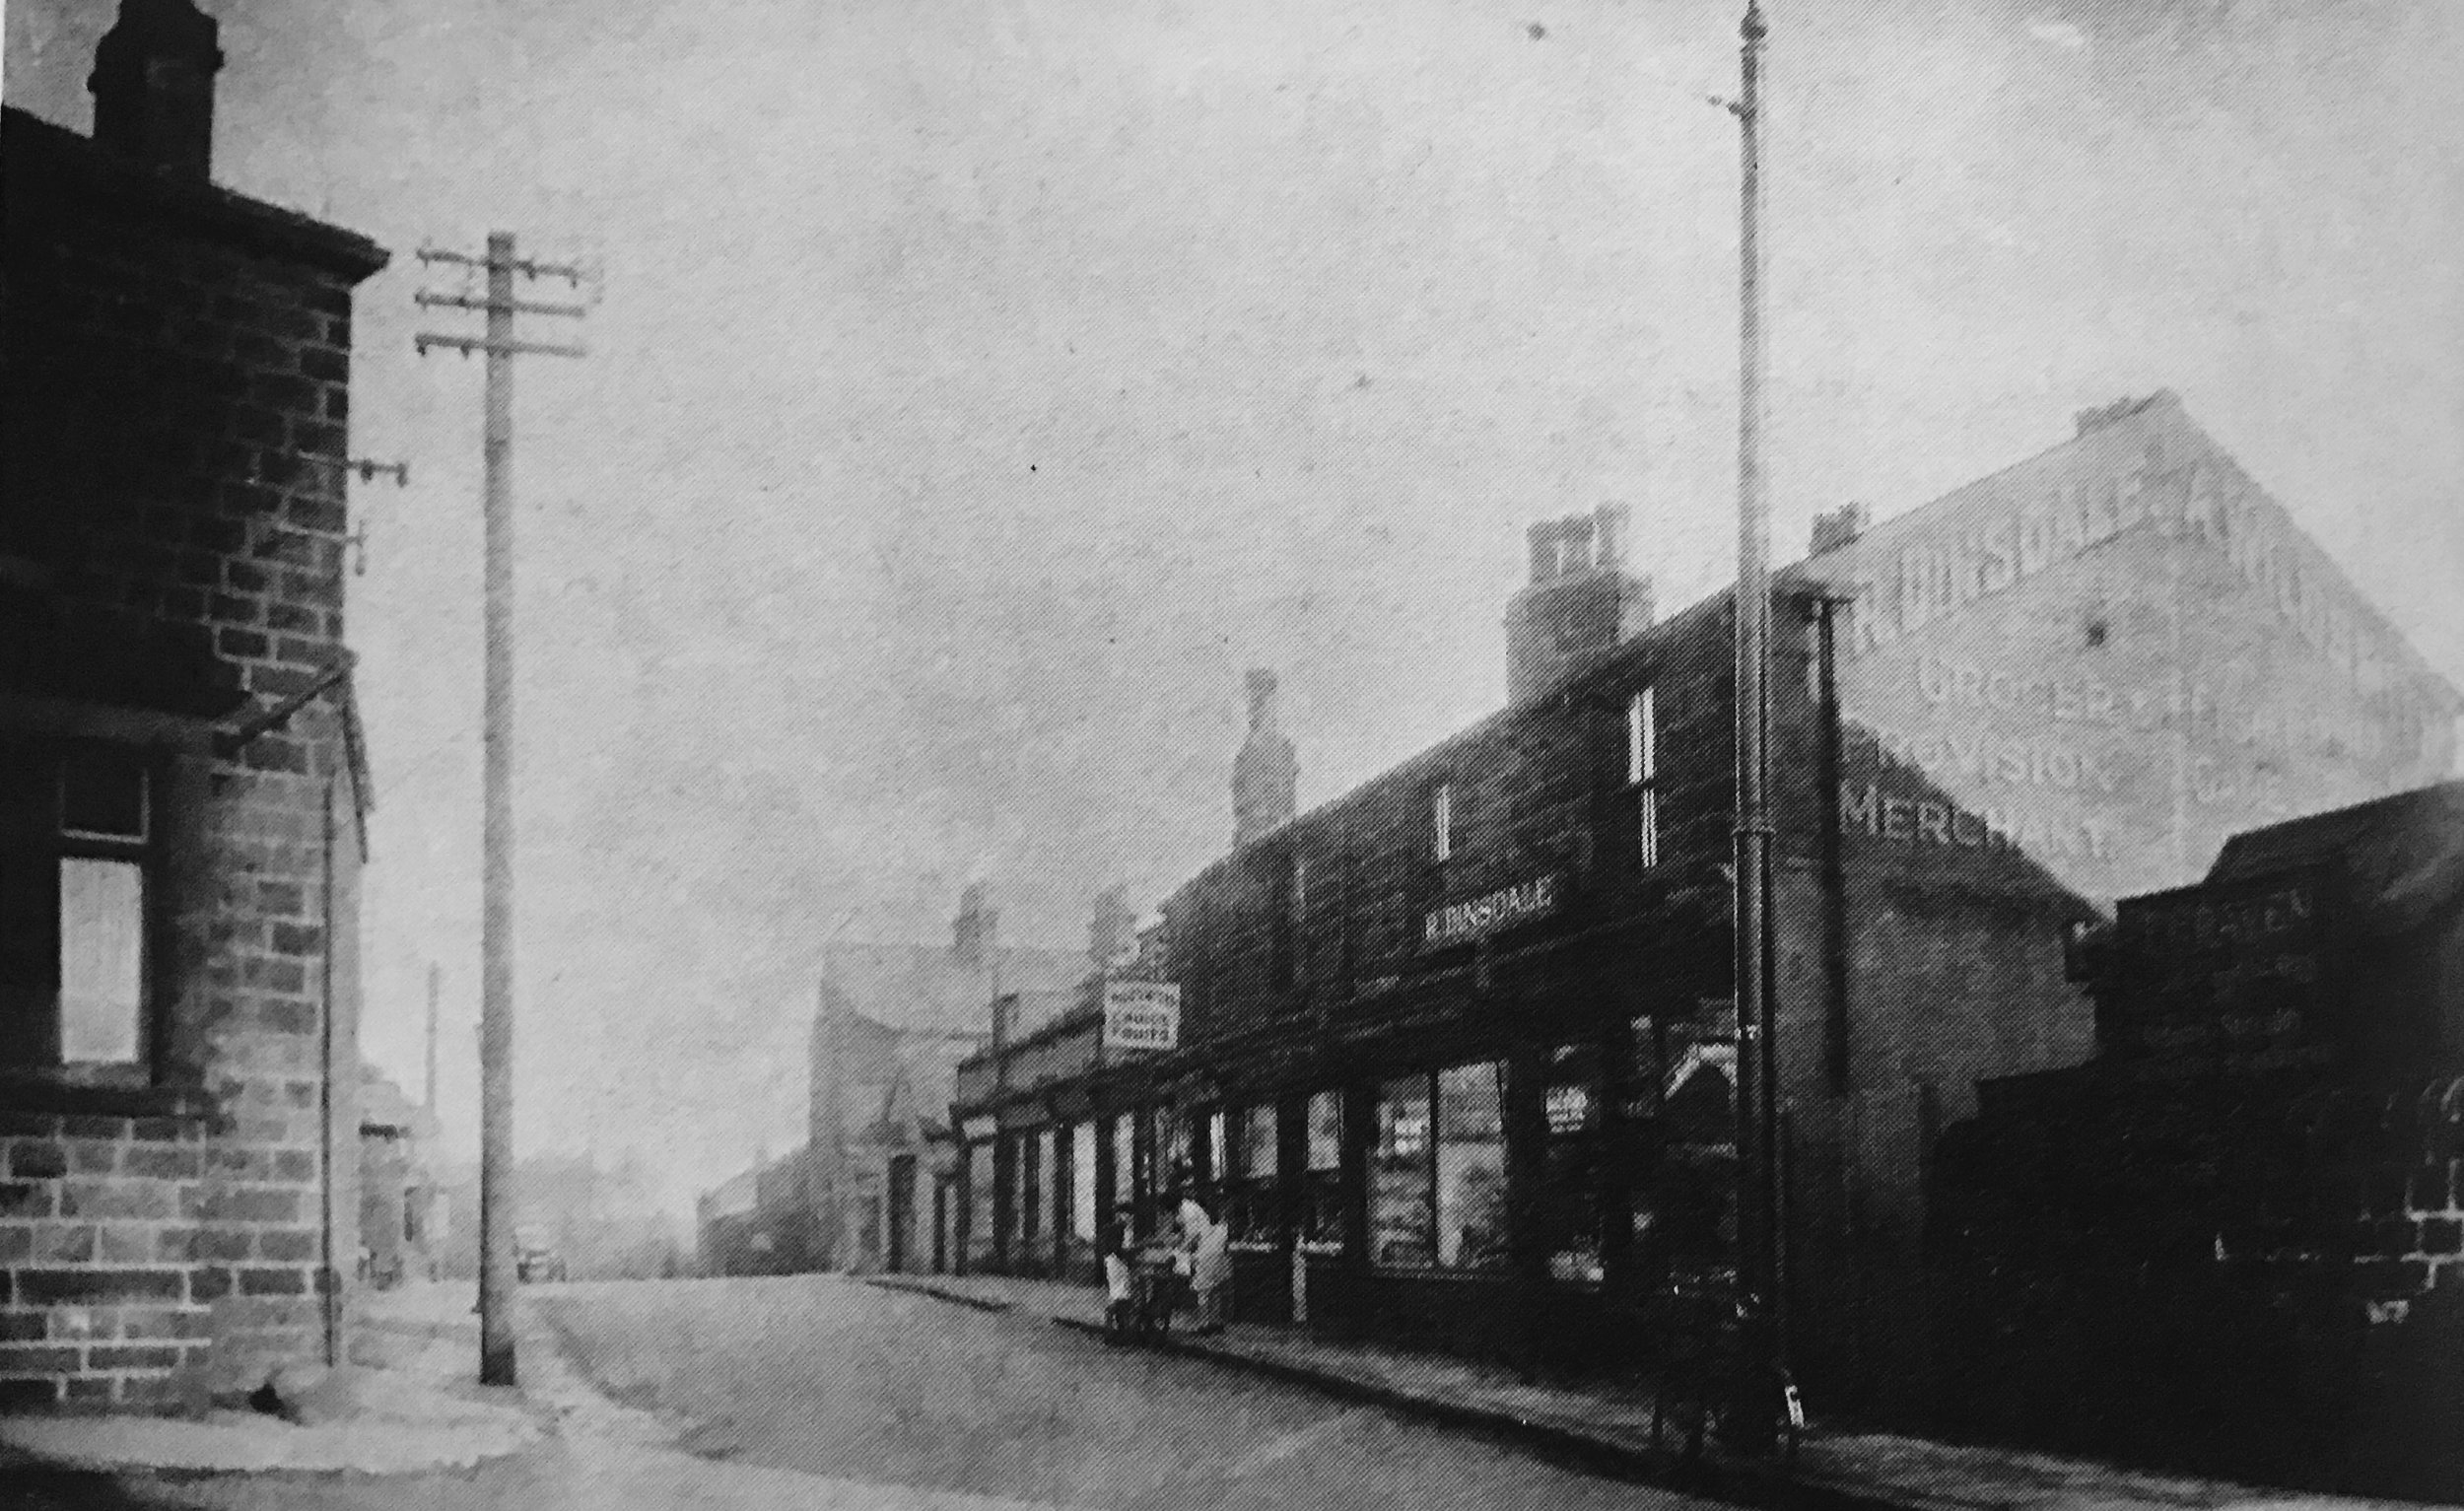 Weetwood Lane, circa 1920